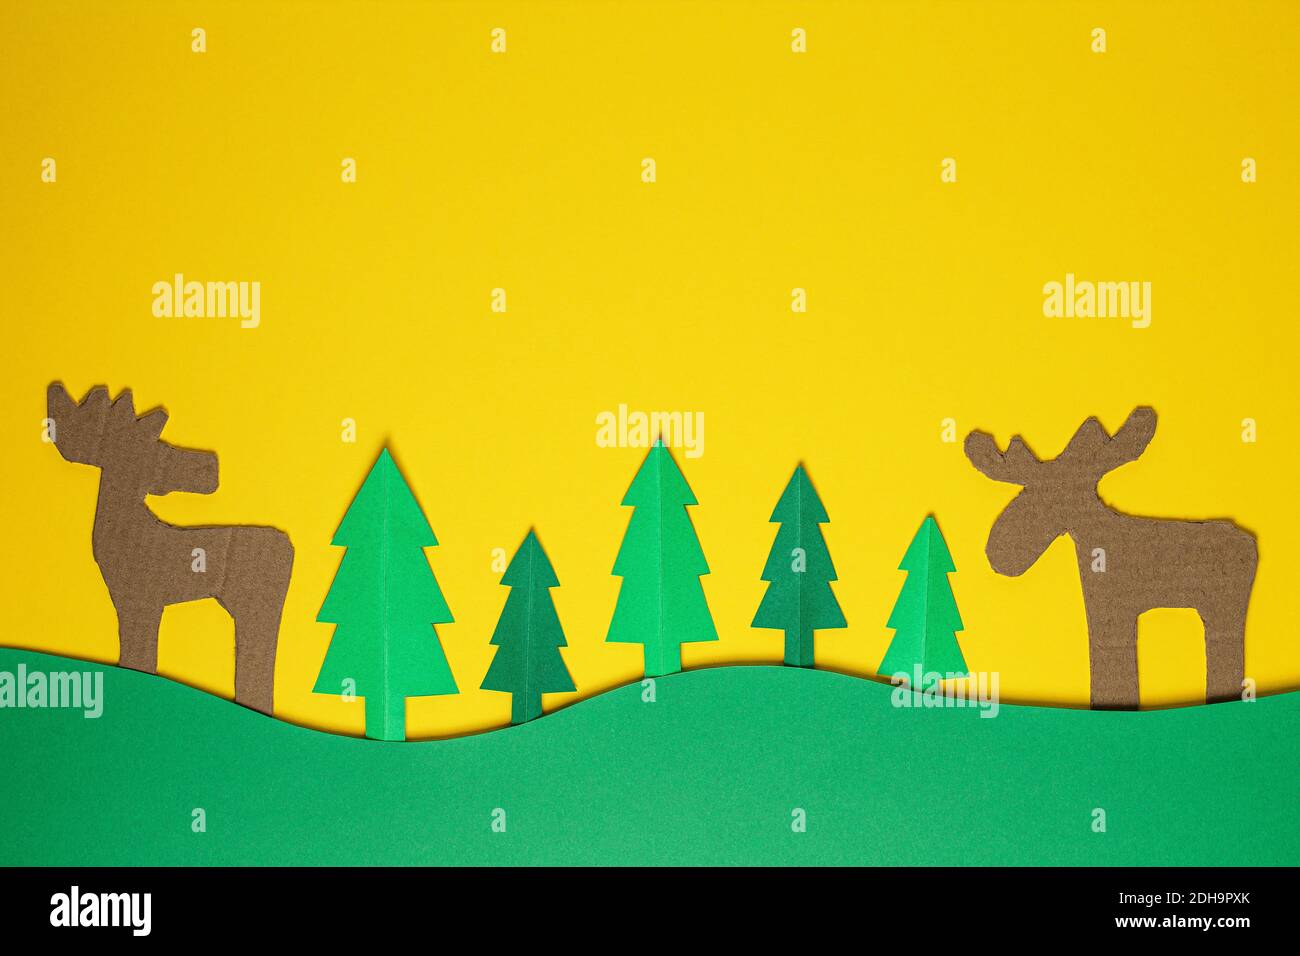 Weihnachtsbaum Papier schneiden Design papercraft Karte. Papier geschnitten Weihnachtsbäume und Hirsche. Kreative Gestaltung von weihnachten Hintergrund mit Papier Tanne Baum. Stockfoto